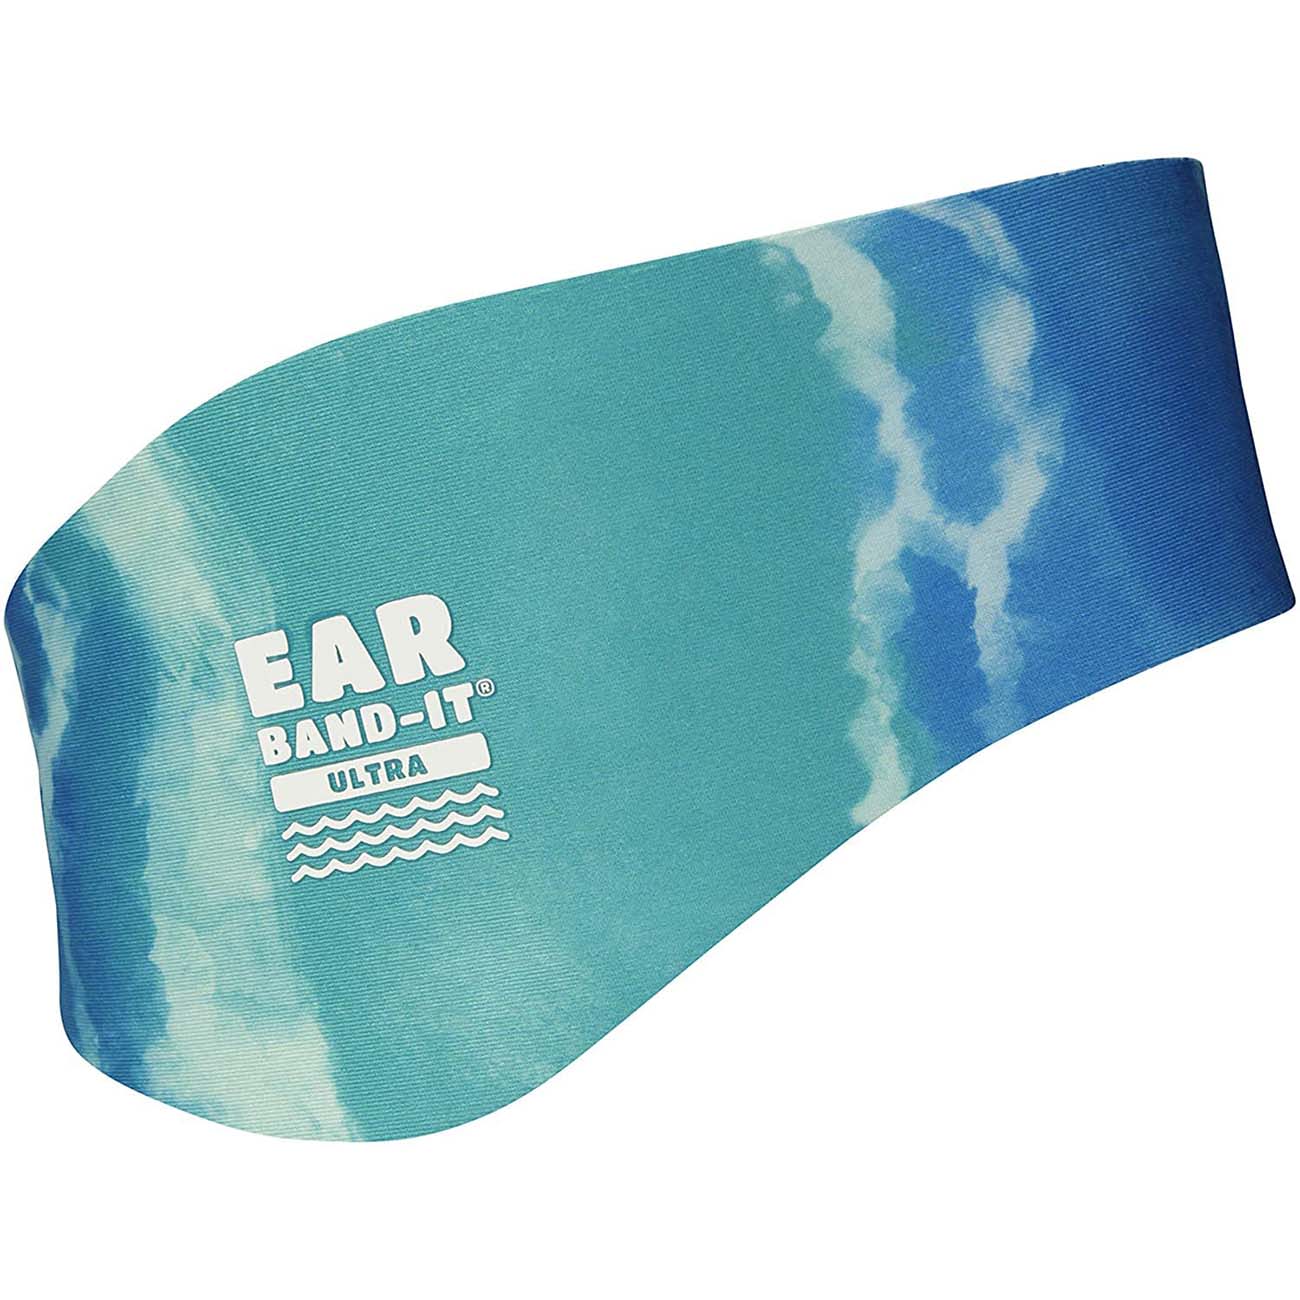 Ear Band-It Ultra Swimmer's Headband - Tie Dye Blue